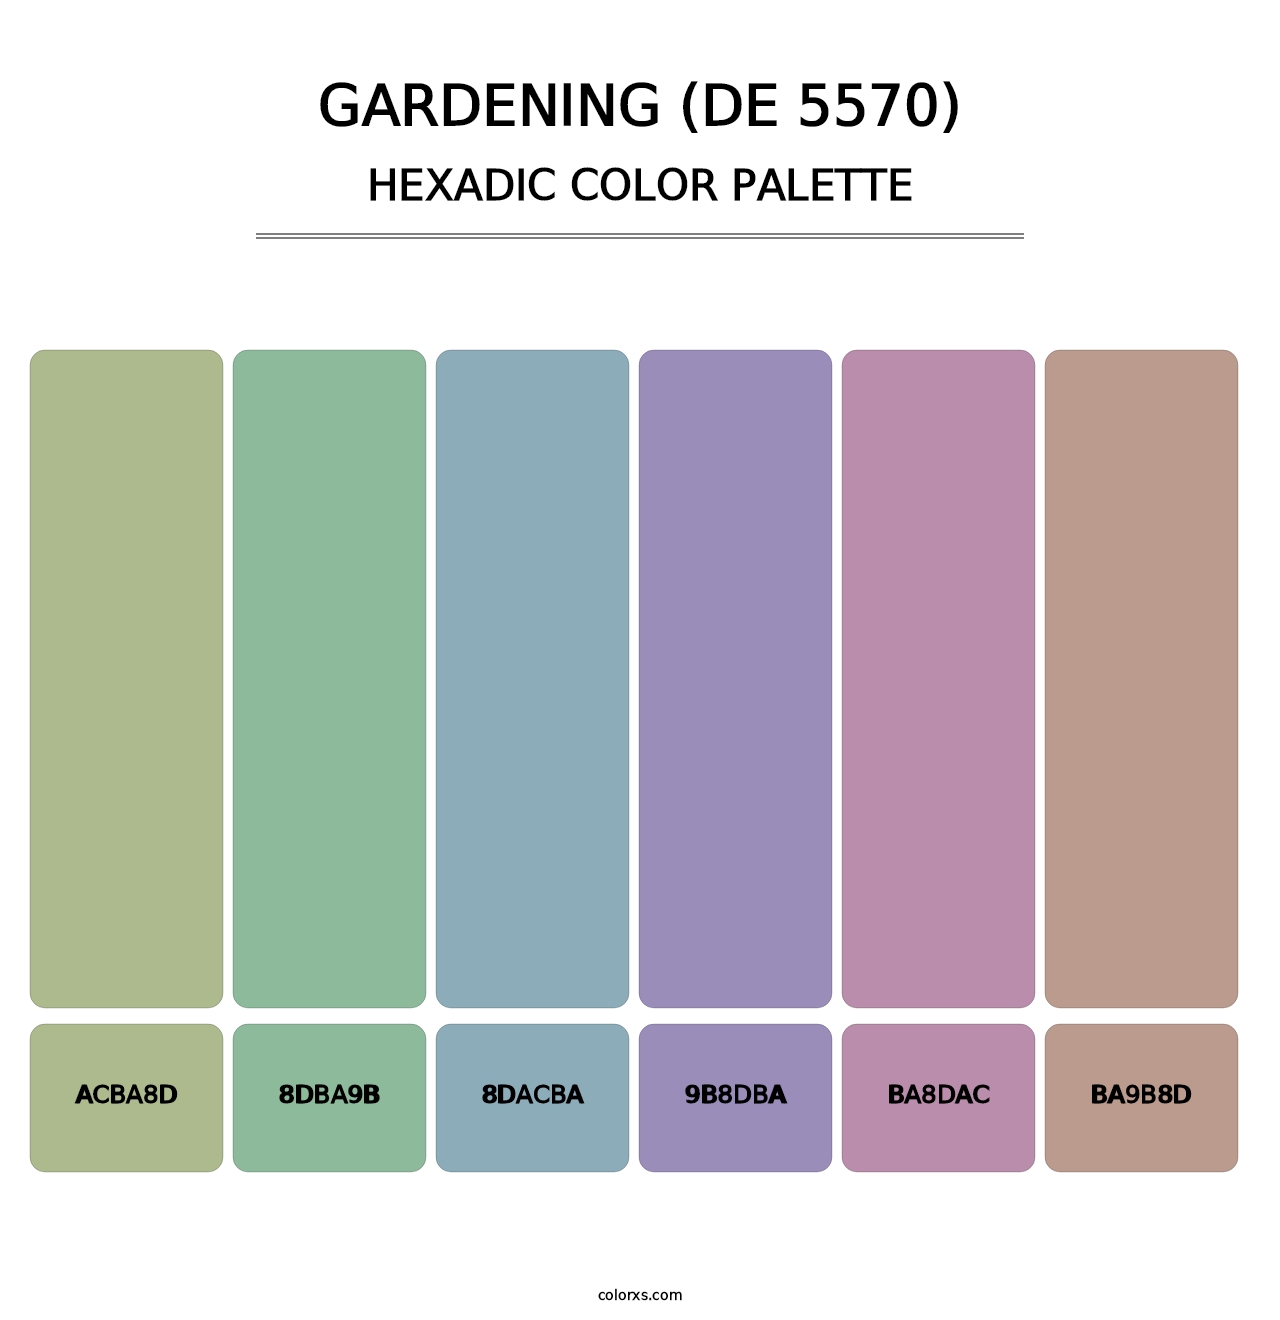 Gardening (DE 5570) - Hexadic Color Palette